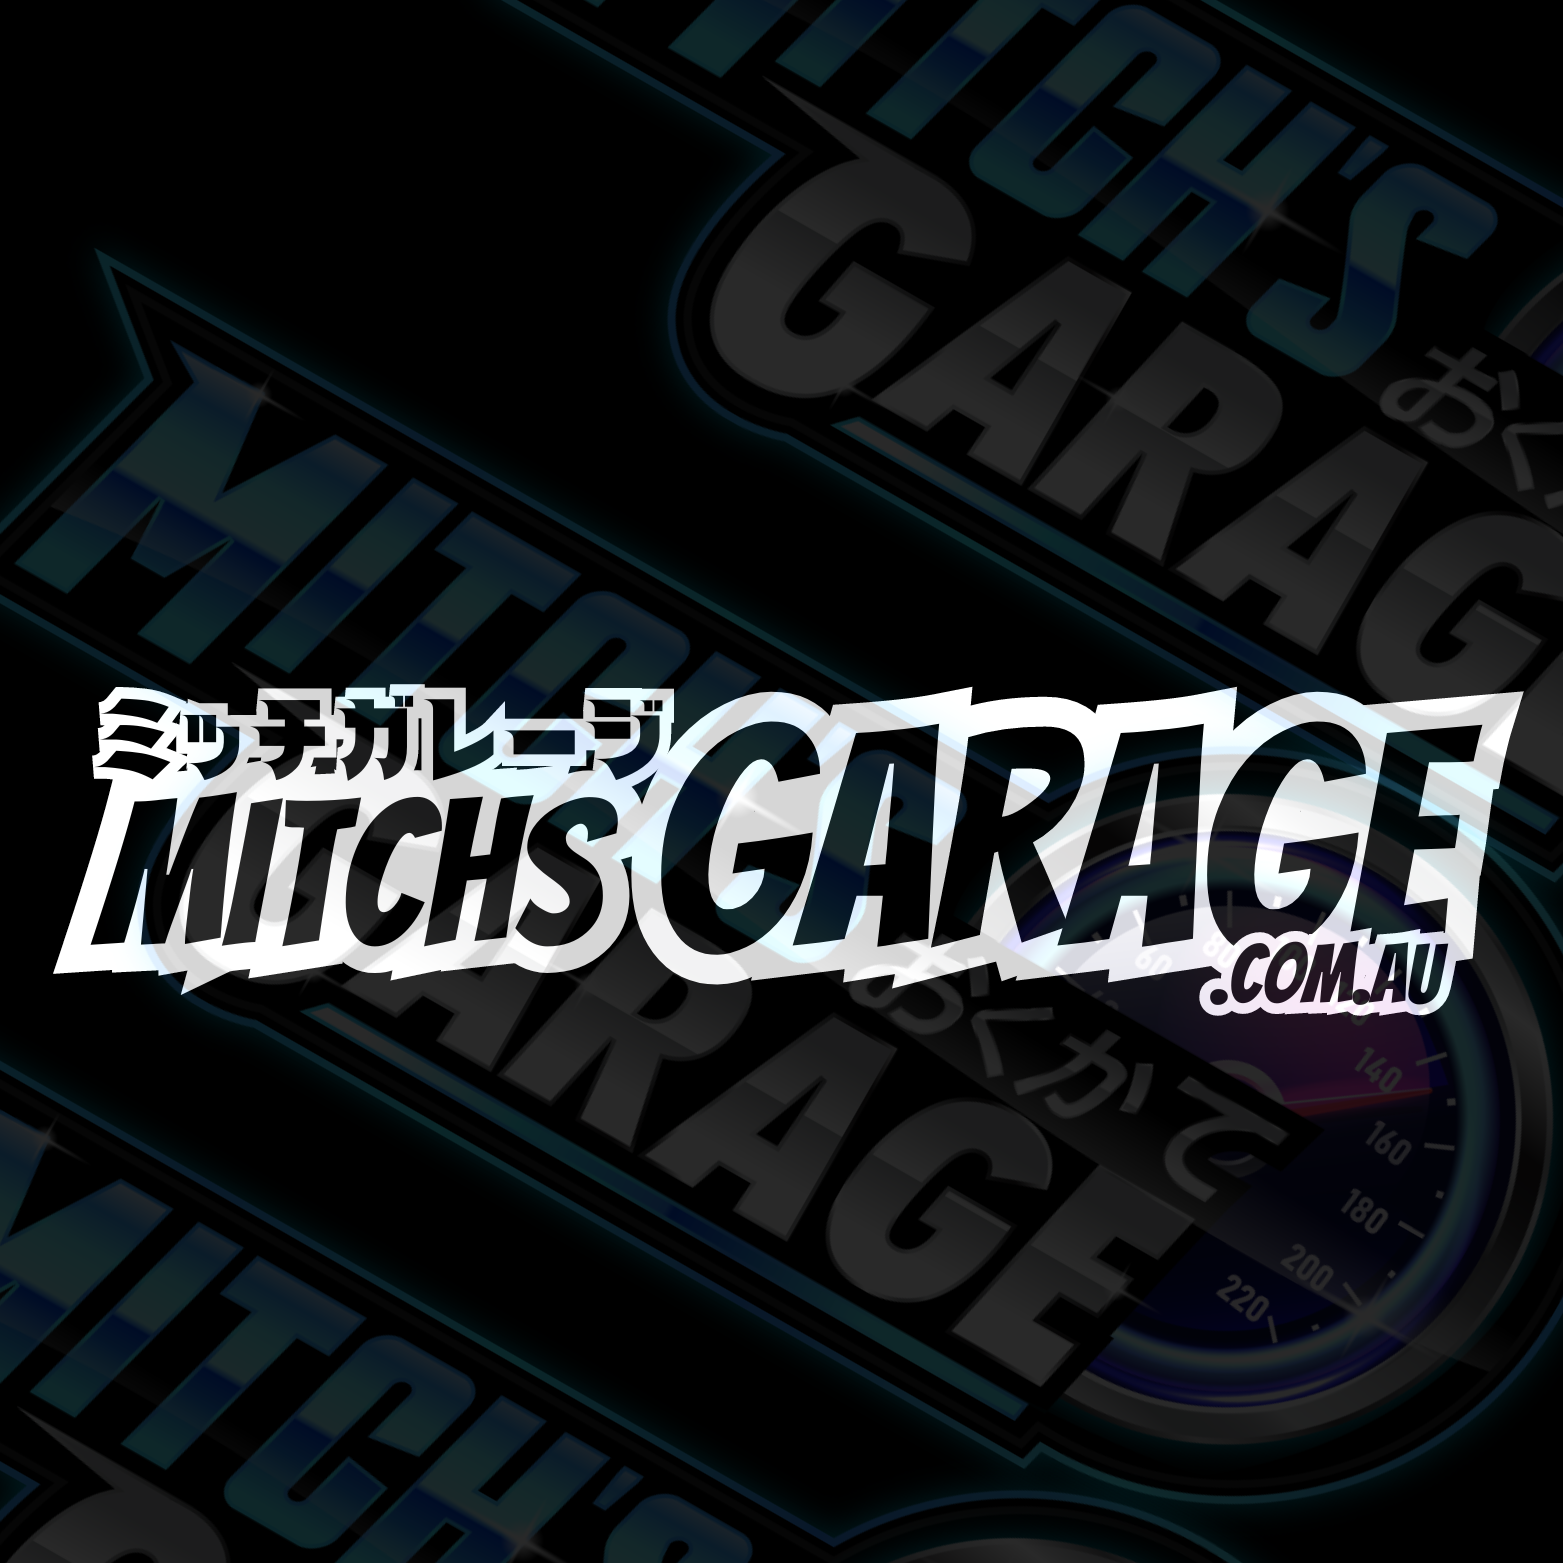 Mitch's Garage Outline Vinyl Decal